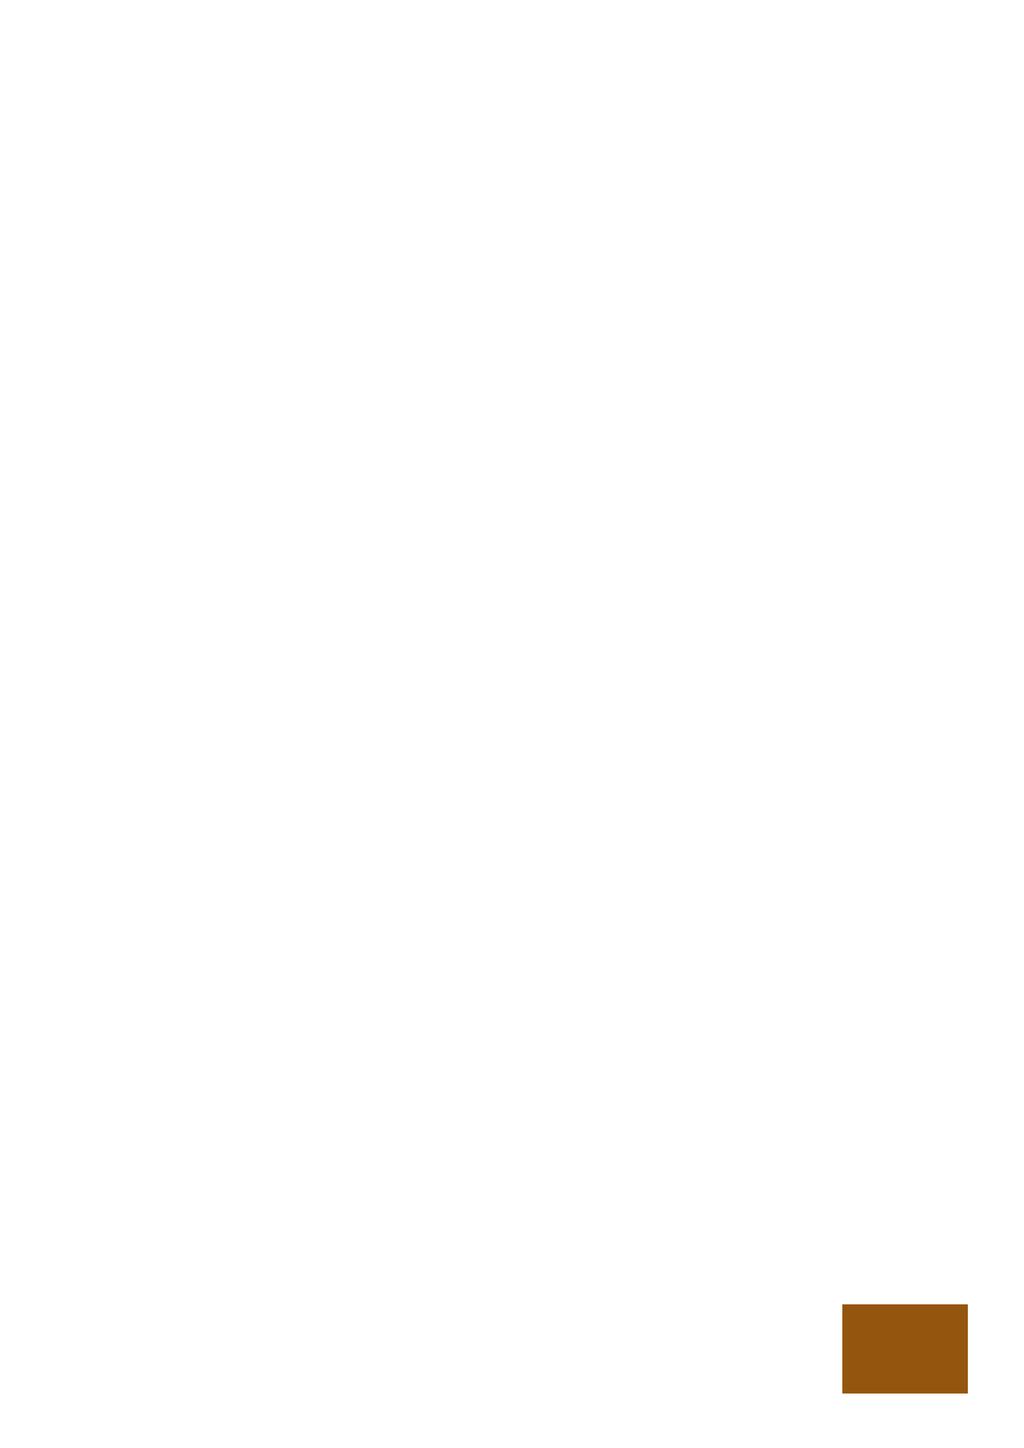 Avgifter för allmänna handlingar och Skatteverkets skydd för enskildas intressen Persson, Vilhelm Published in: Festskrift till Christina Moëll 2017 Document Version: Förlagets slutgiltiga version